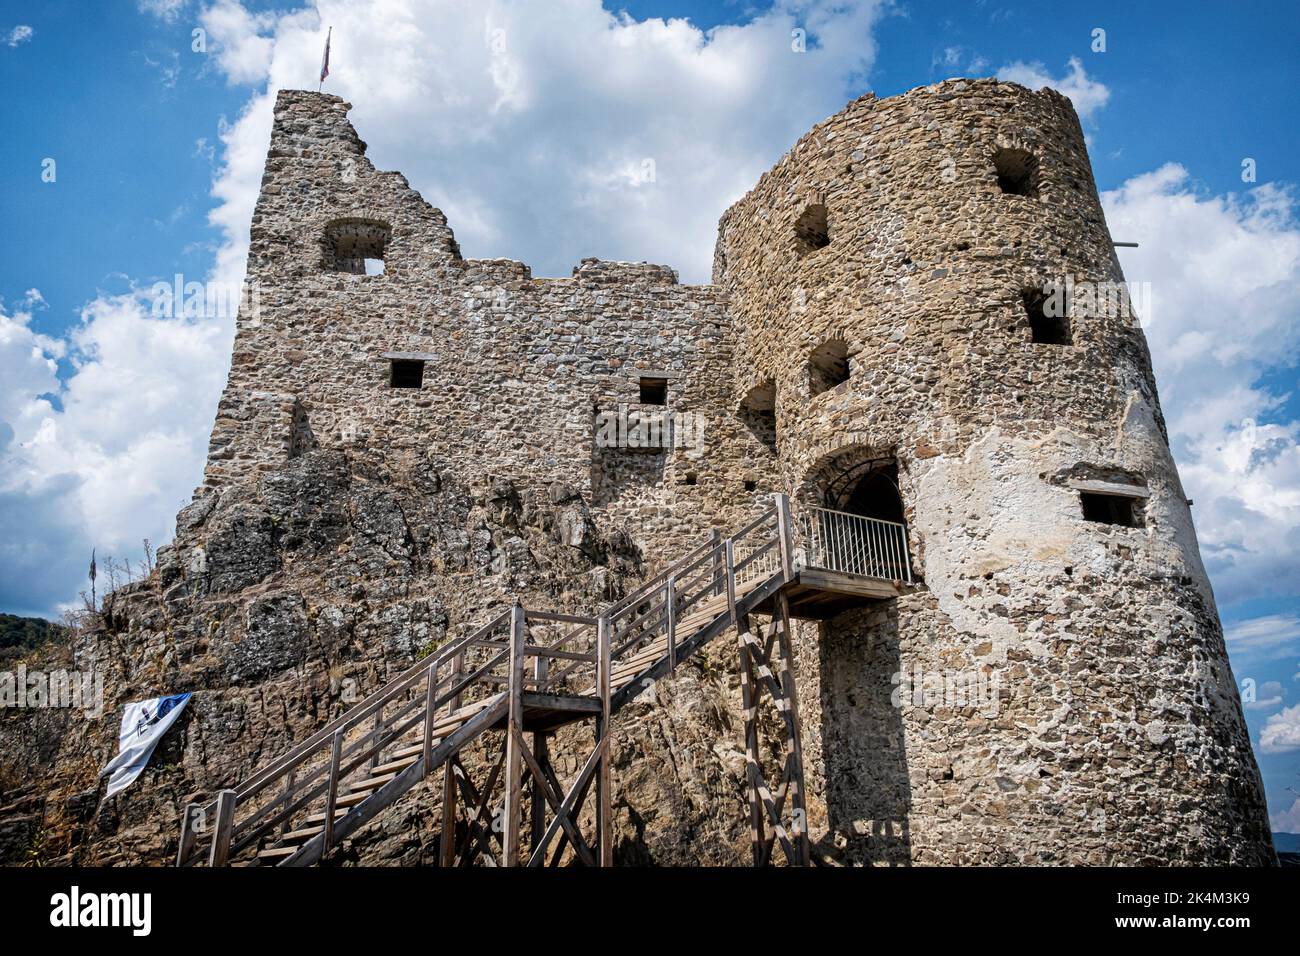 Reviste castle ruins, Slovak republic. Travel destination. Architectural theme. Stock Photo